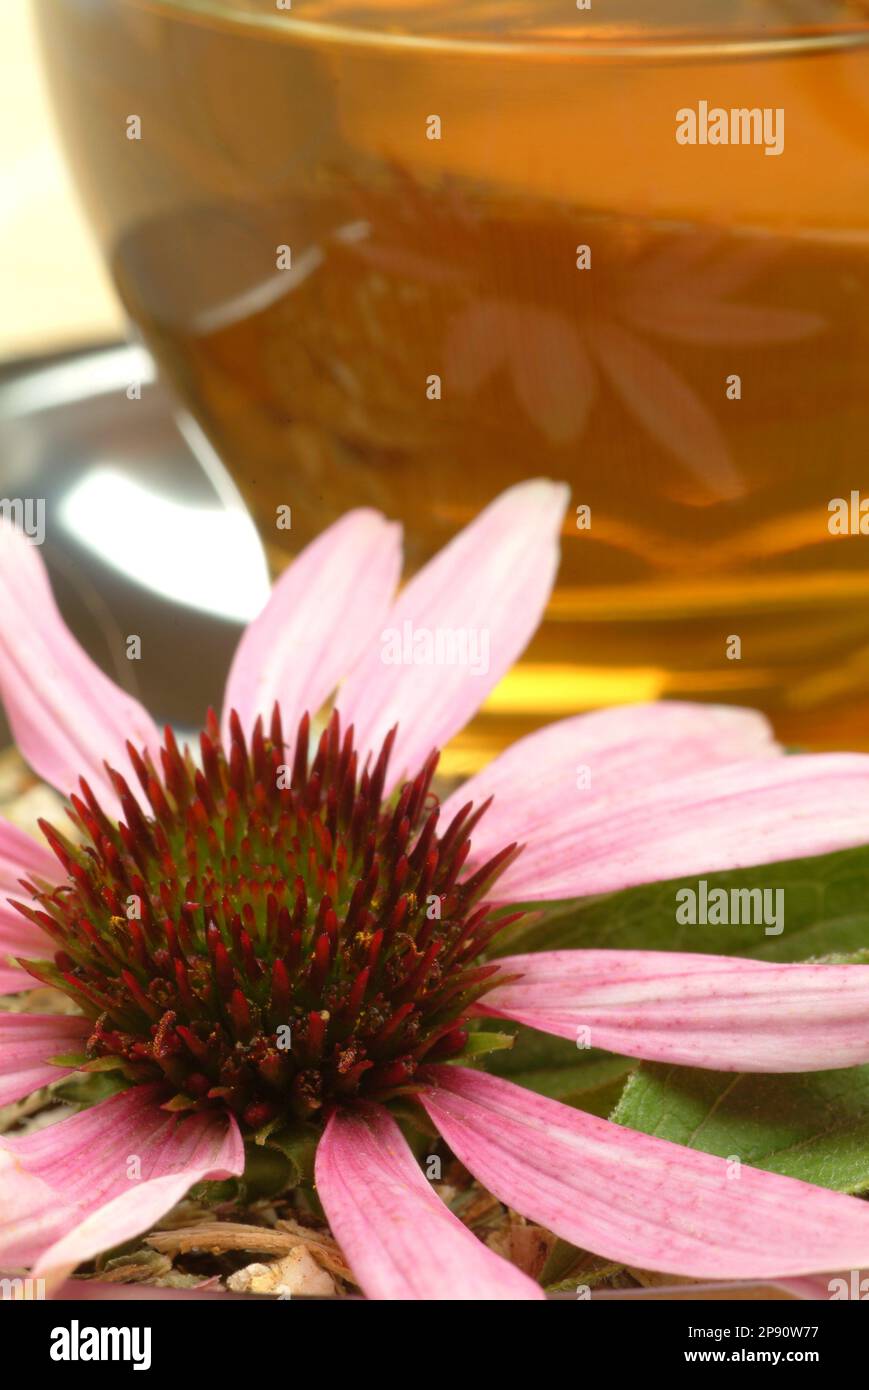 Tee aus Roter Sonnenhut, Heilpflanze, medizinische Verwendung, Kräuter, Heilkräuter, Naturheilkunde, Heiltee, Kräutertee, frische Blüte auf getrocknet Stock Photo